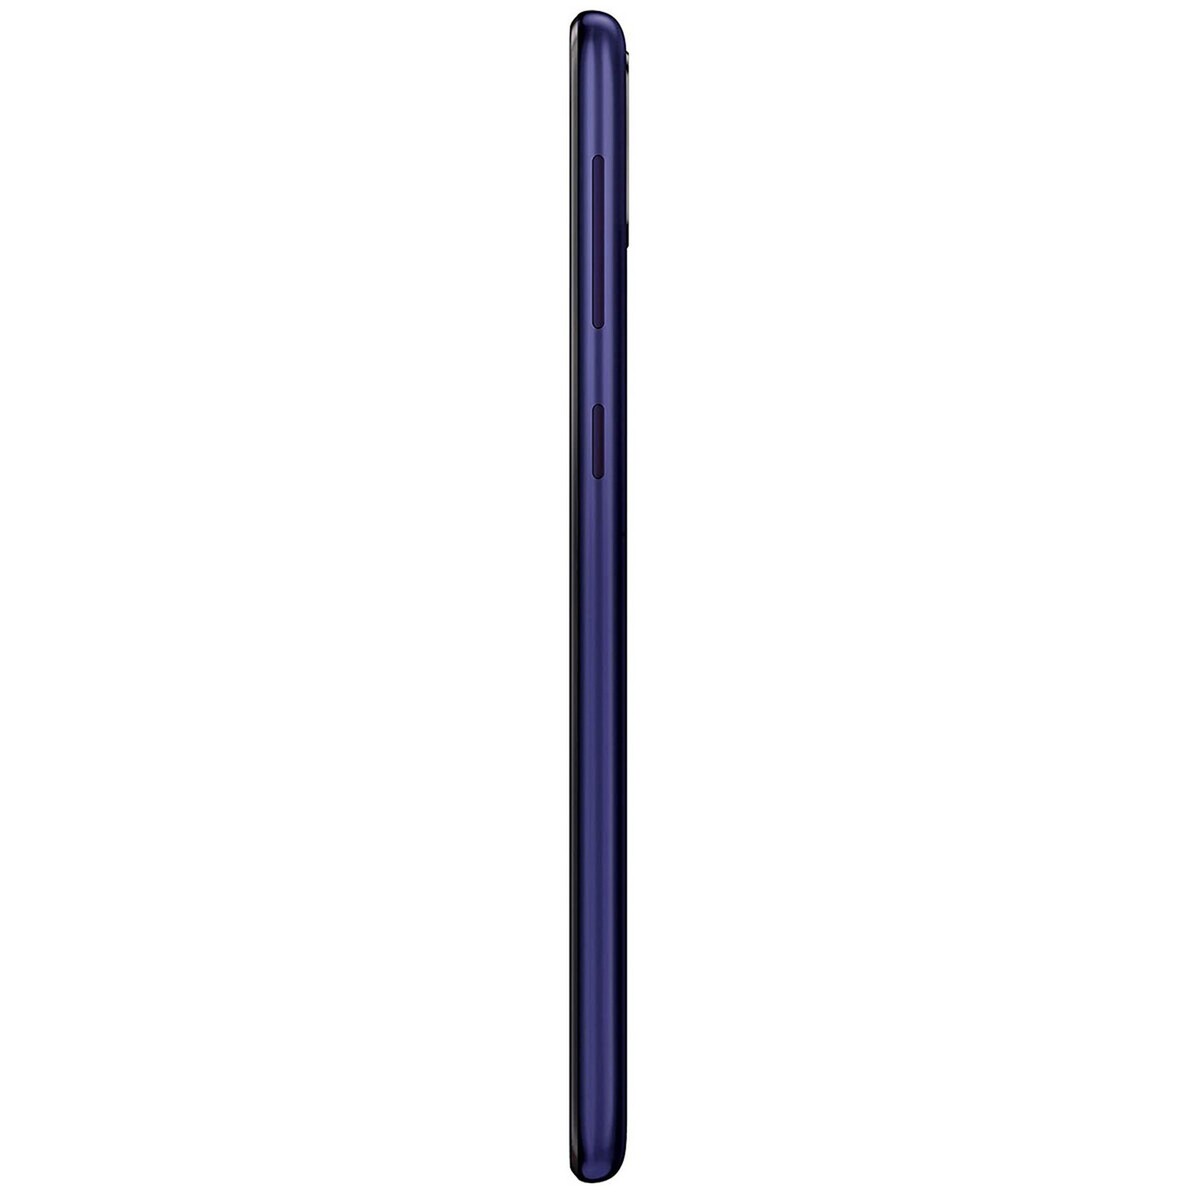 Samsung Galaxy M30 3GB/32GB Blue